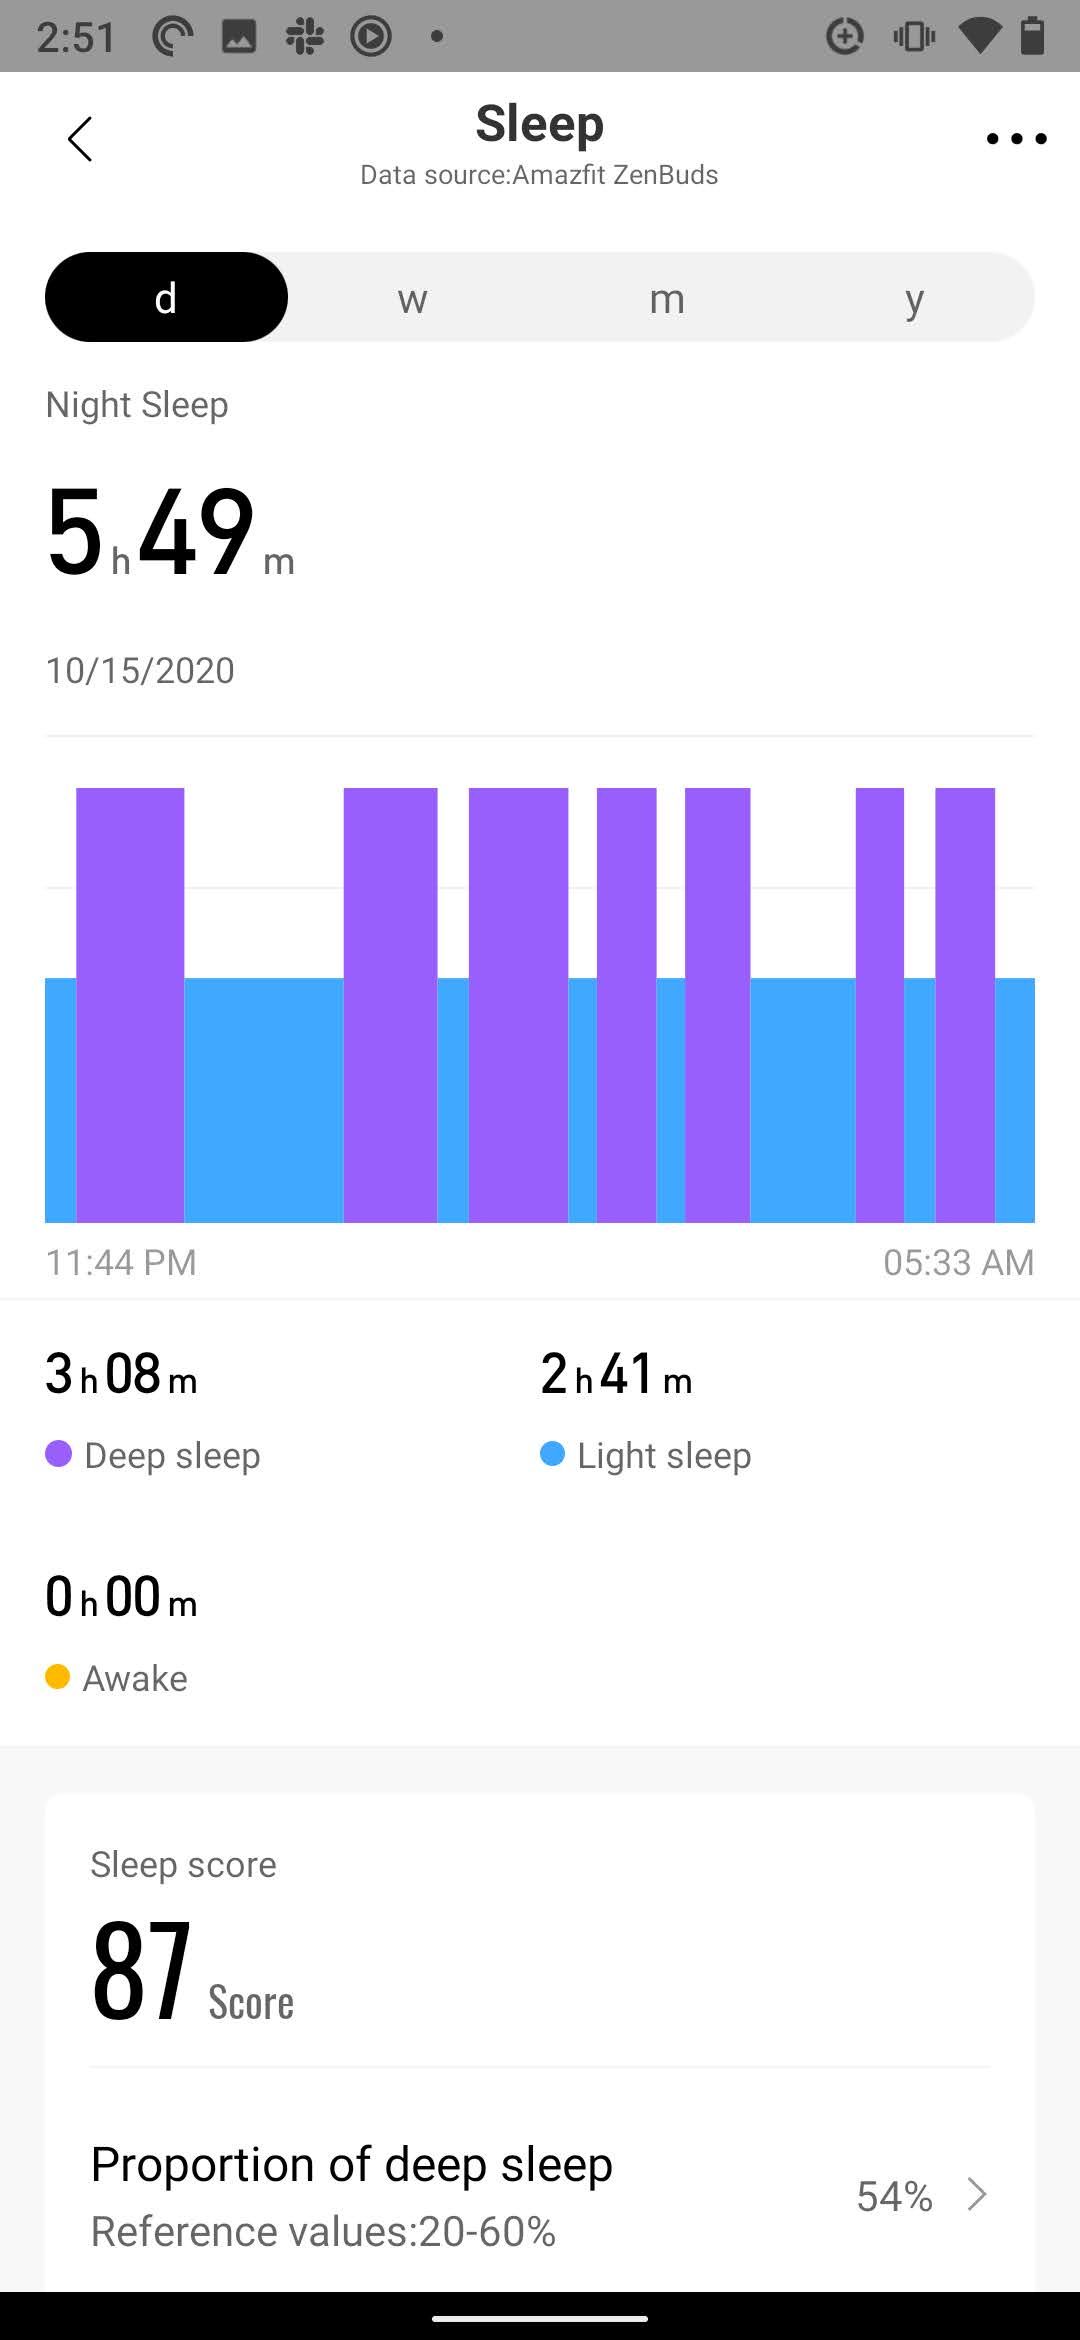 zenbuds deep sleep and light sleep data